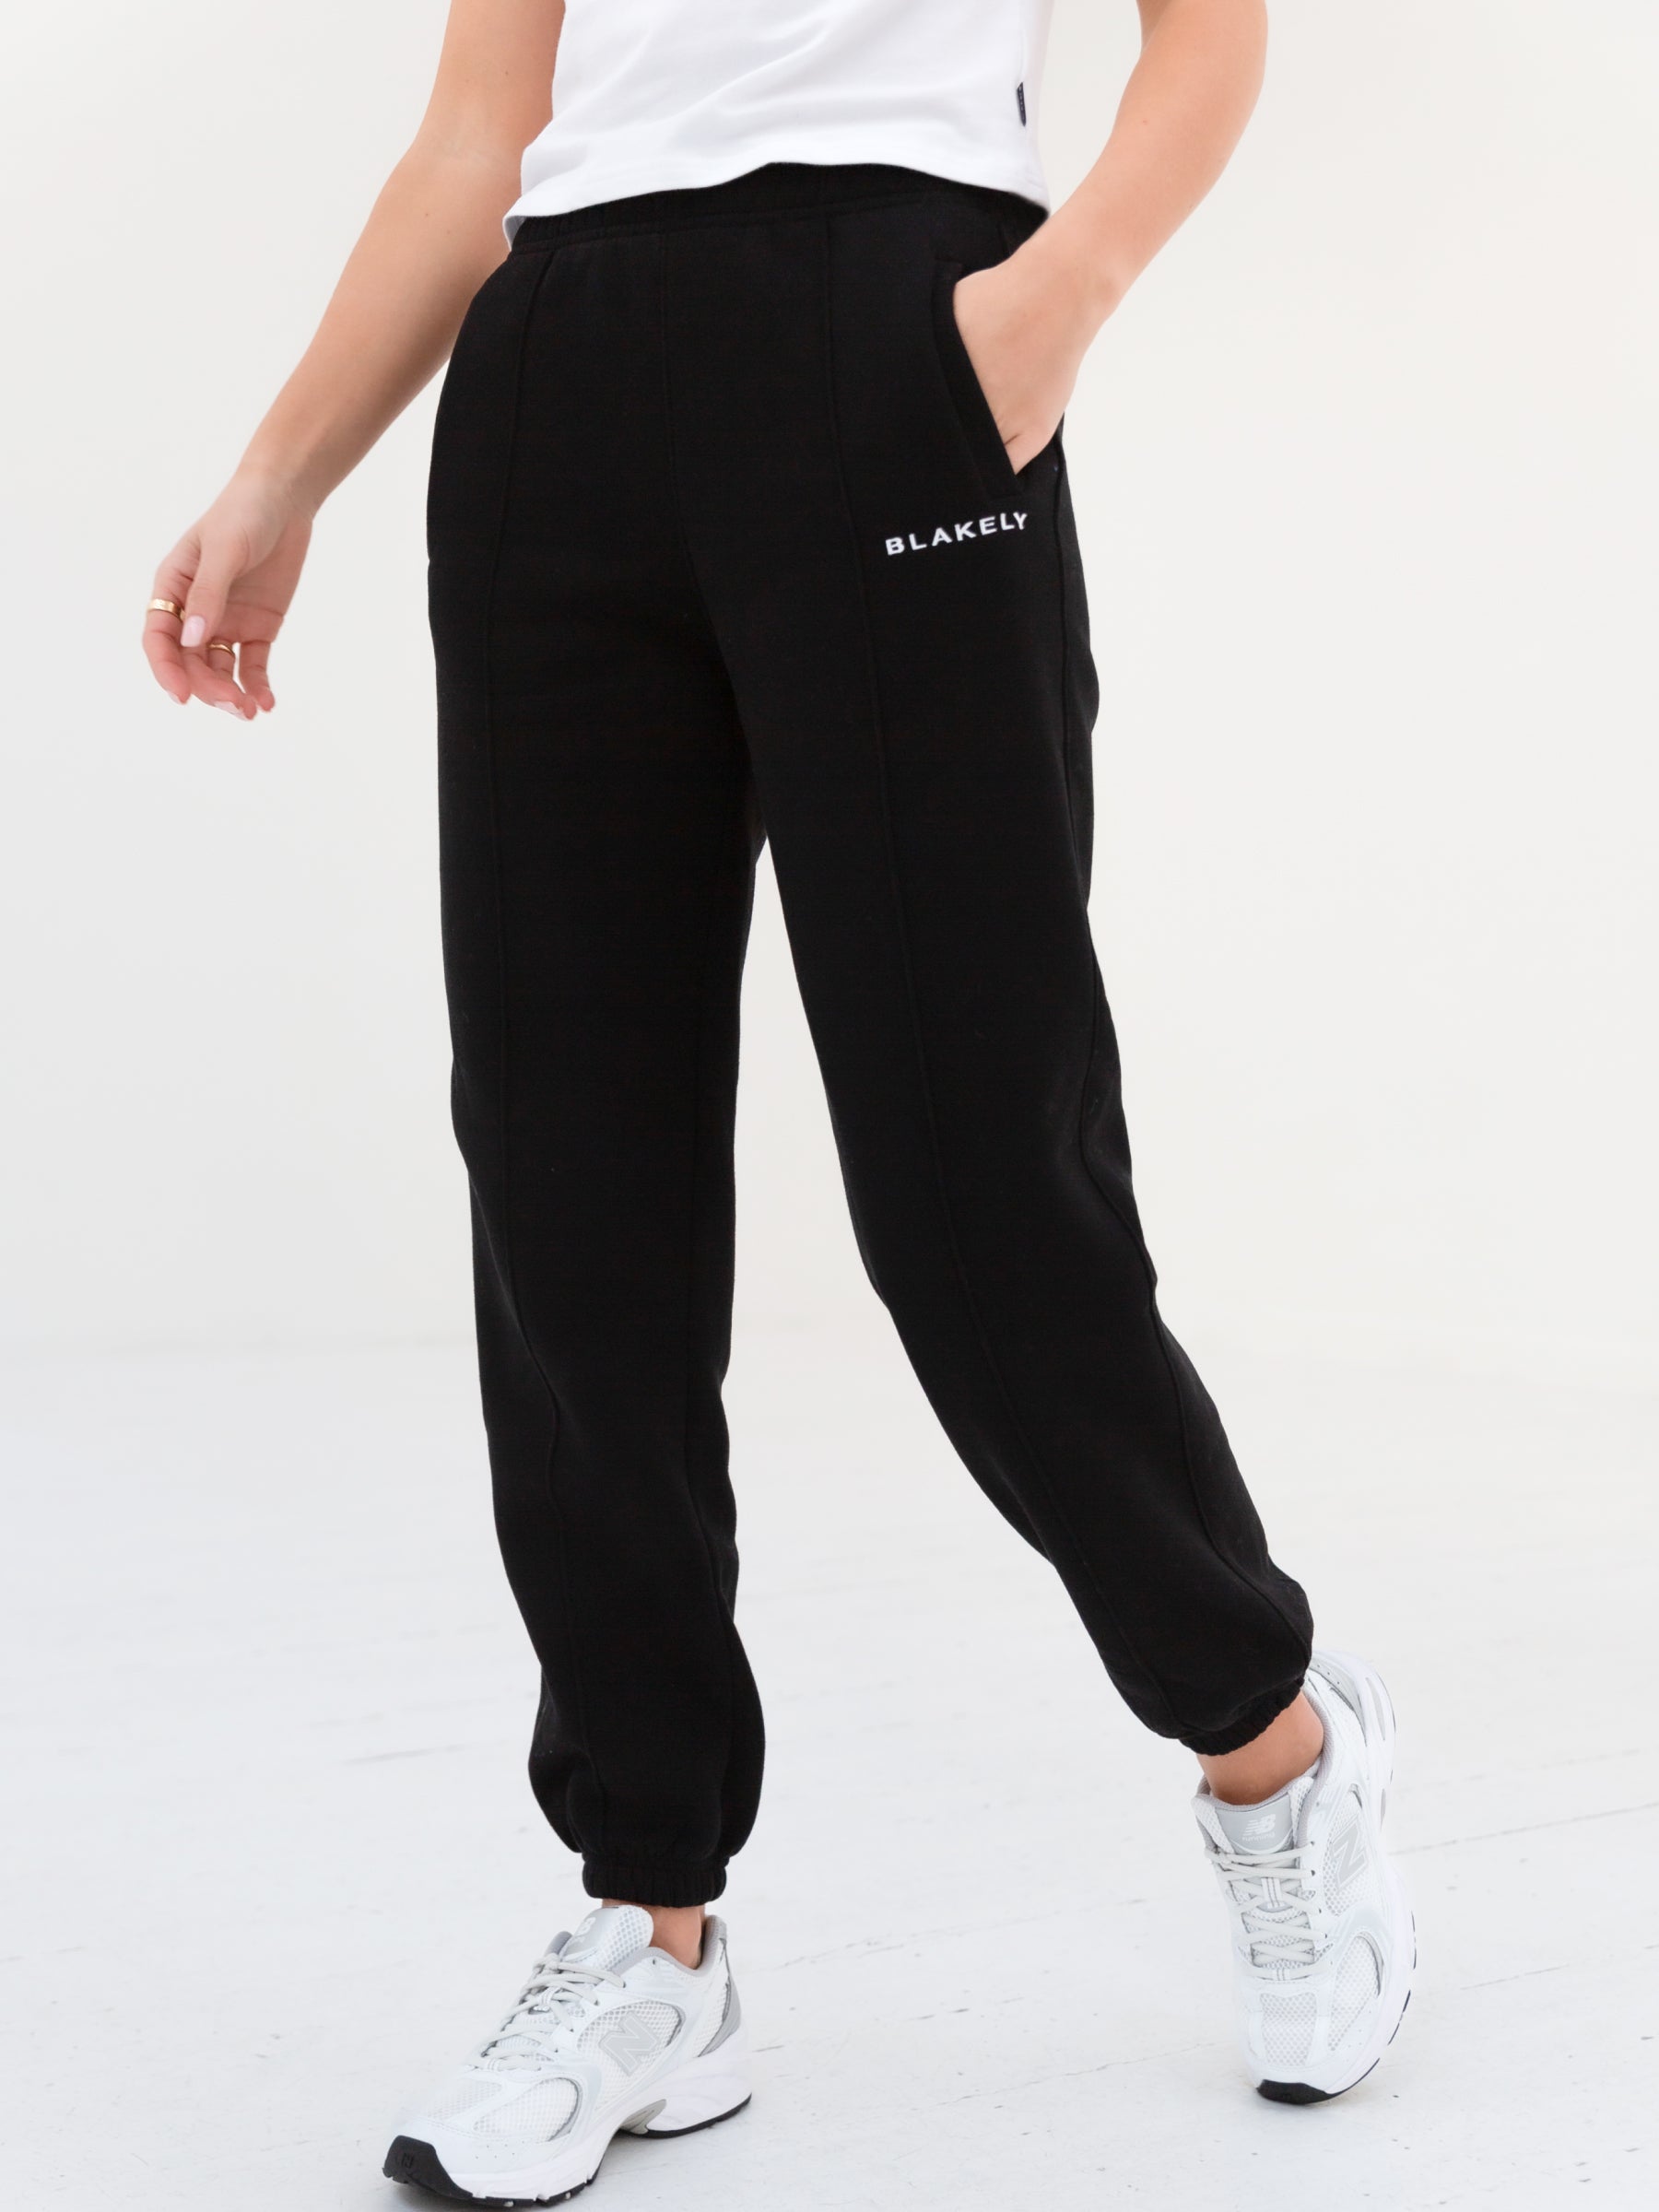 Buy Blakely Black Everyday Sweatpants – Blakely Clothing US